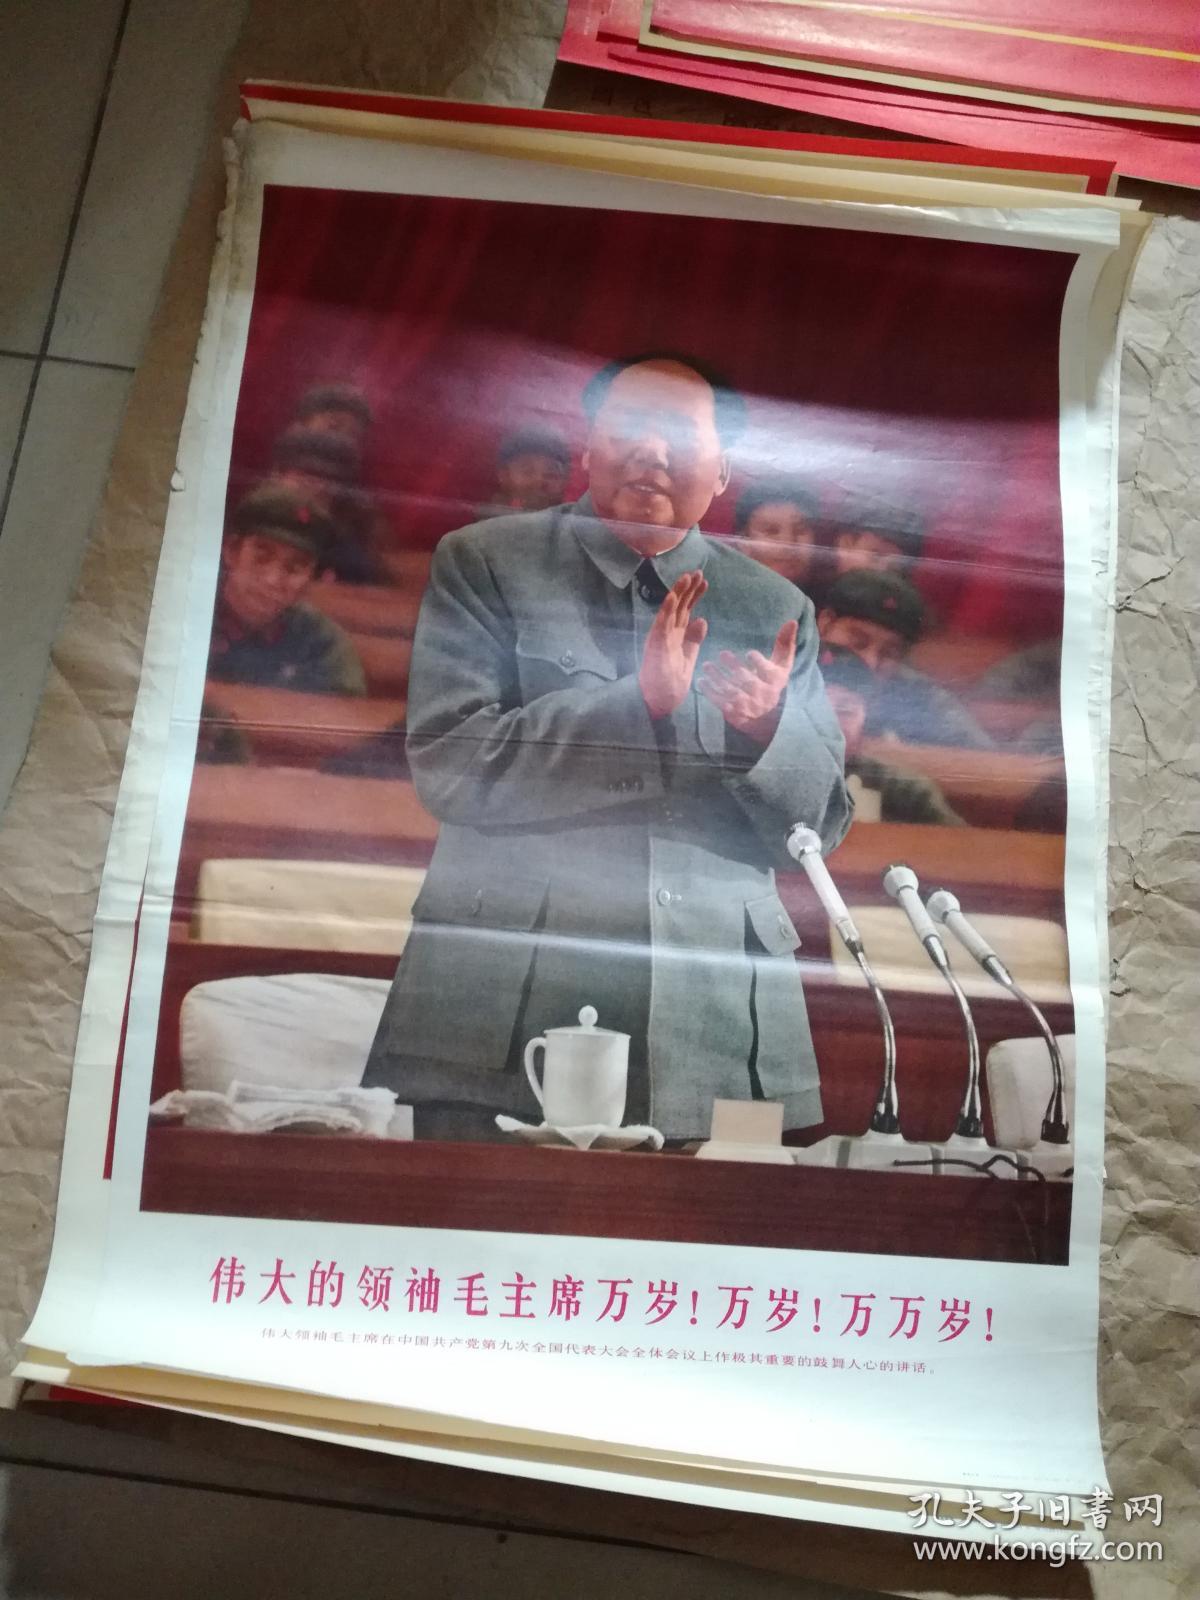 2开**宣传画，保真，伟大的领袖毛主席万岁！万岁！万万岁！我们的伟大领袖毛主席在中国共产党第九次全国代表大会上作极其重要的鼓舞人心的讲话。